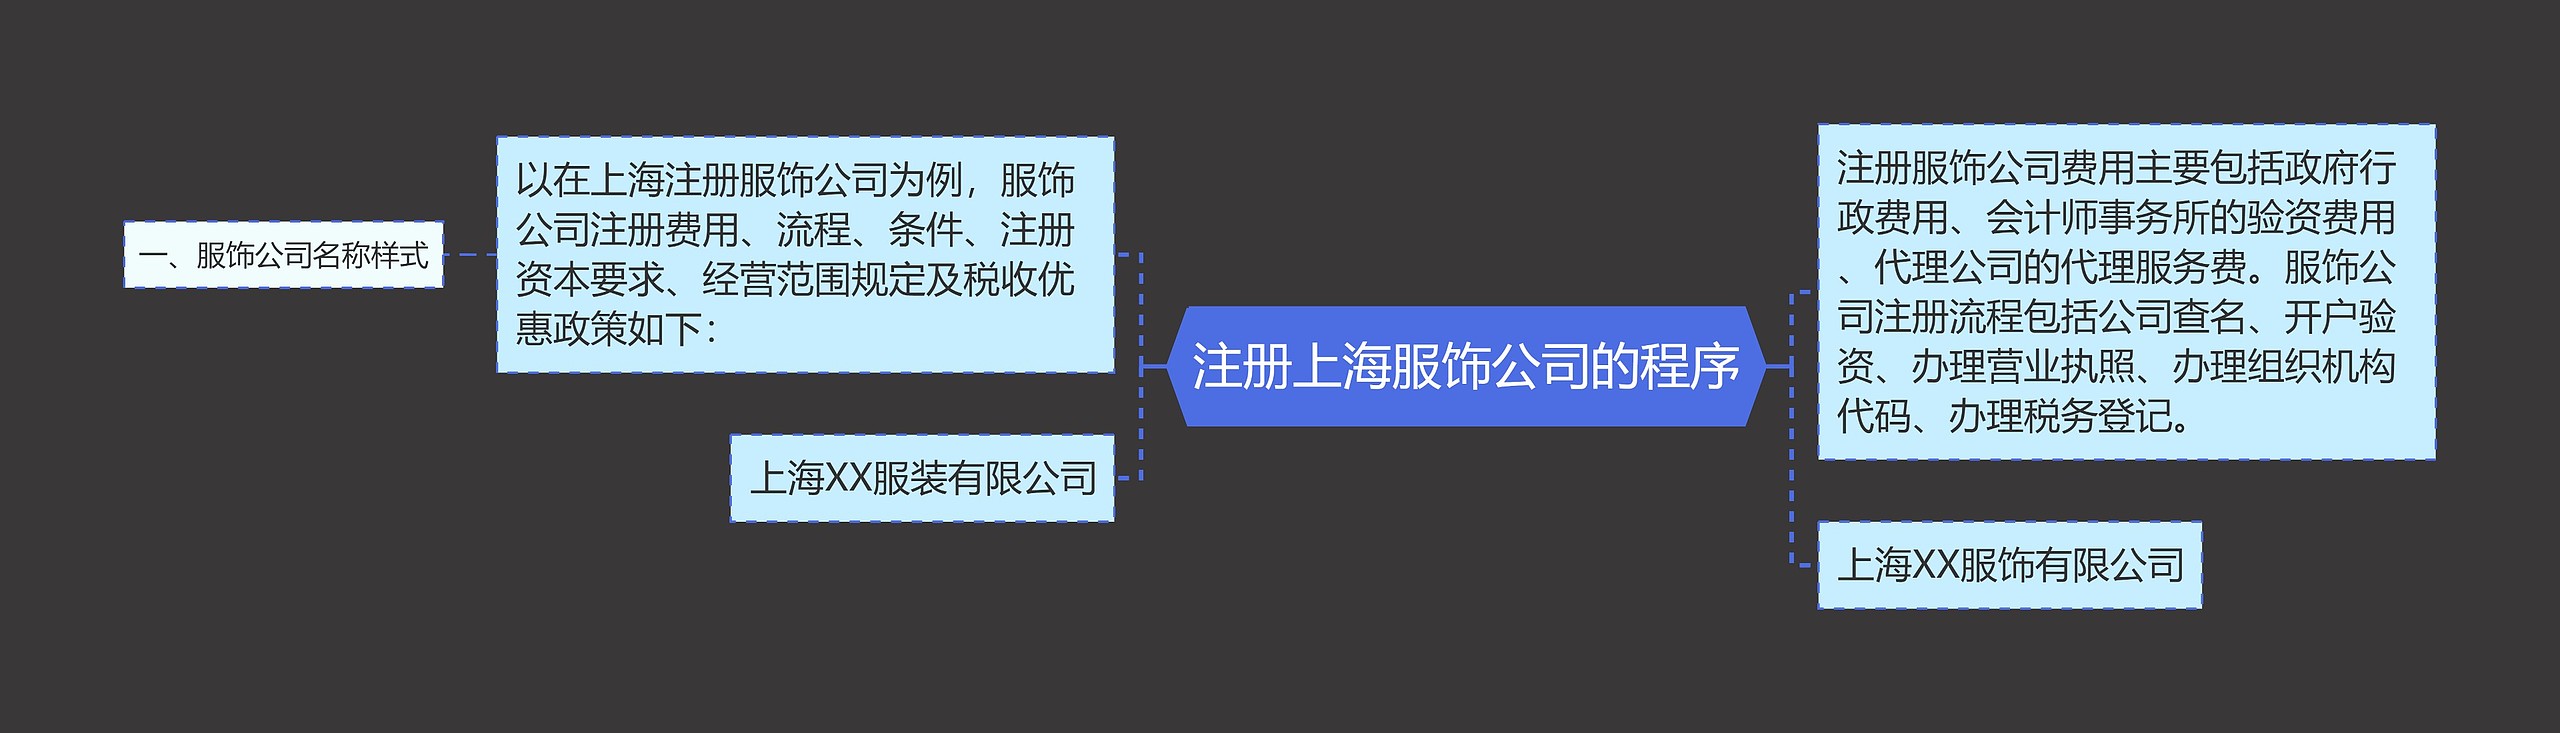 注册上海服饰公司的程序思维导图